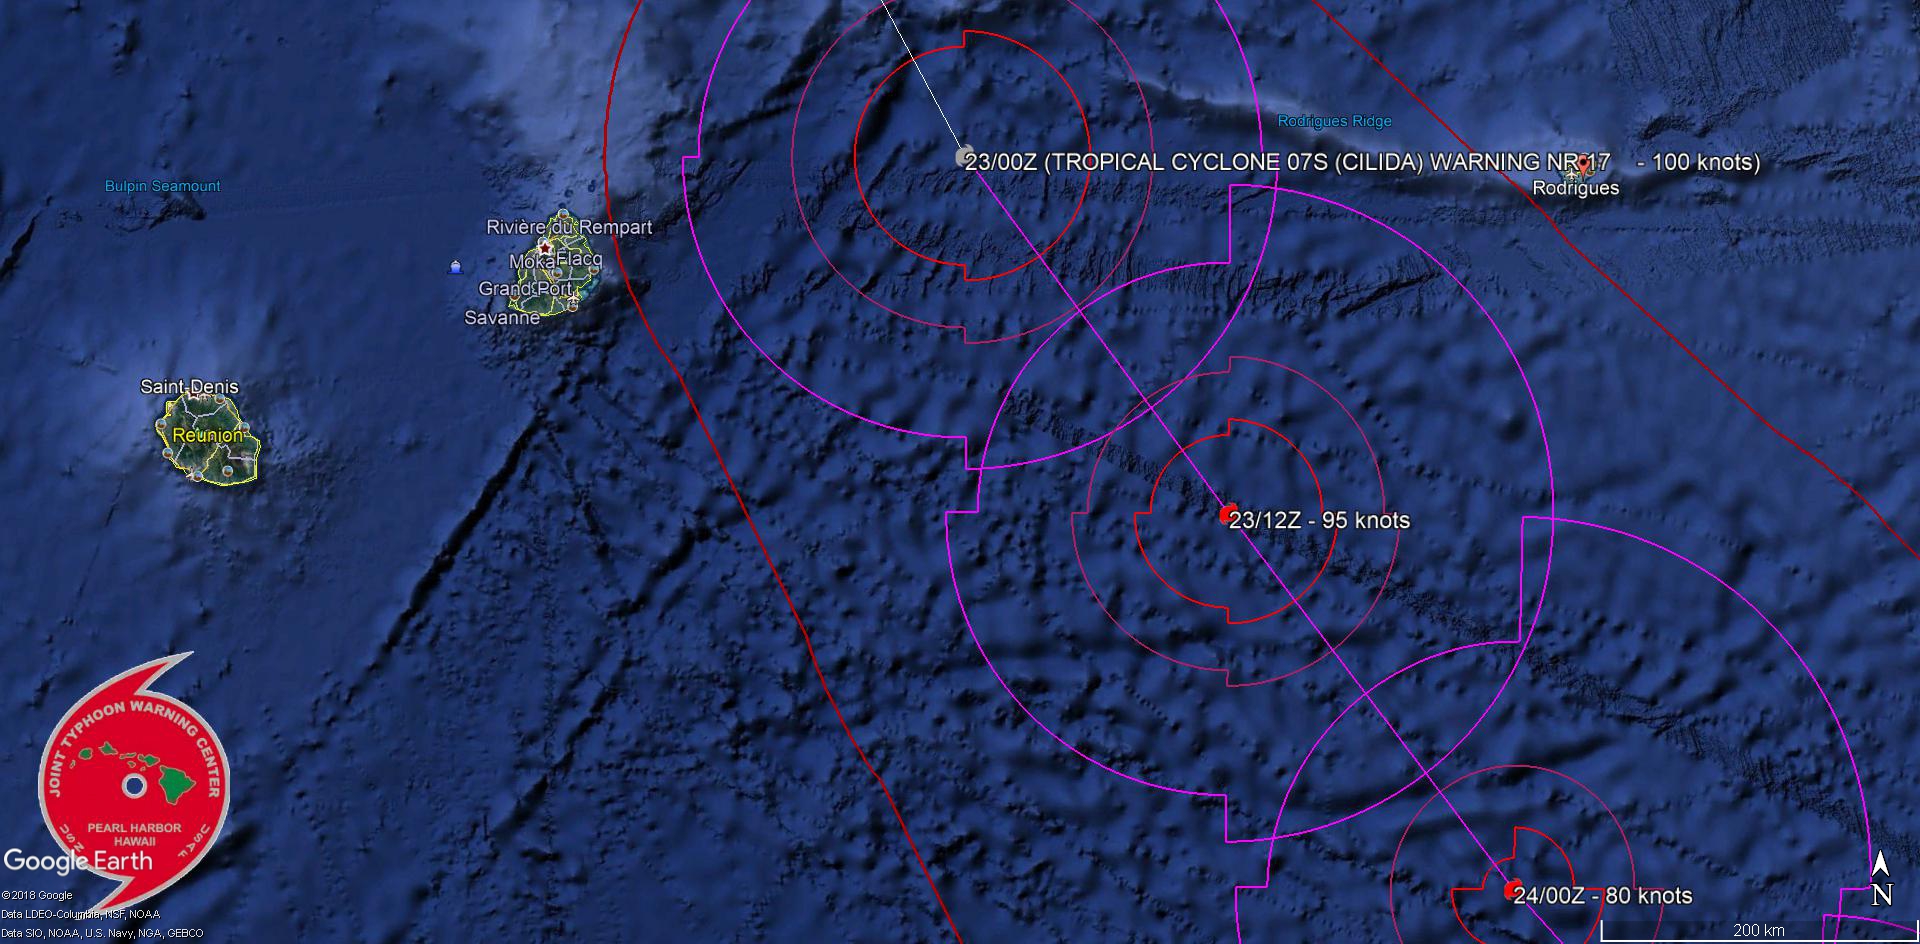 Le centre du cyclone intense est passé à quelques 230km des côtes mauriciennes.